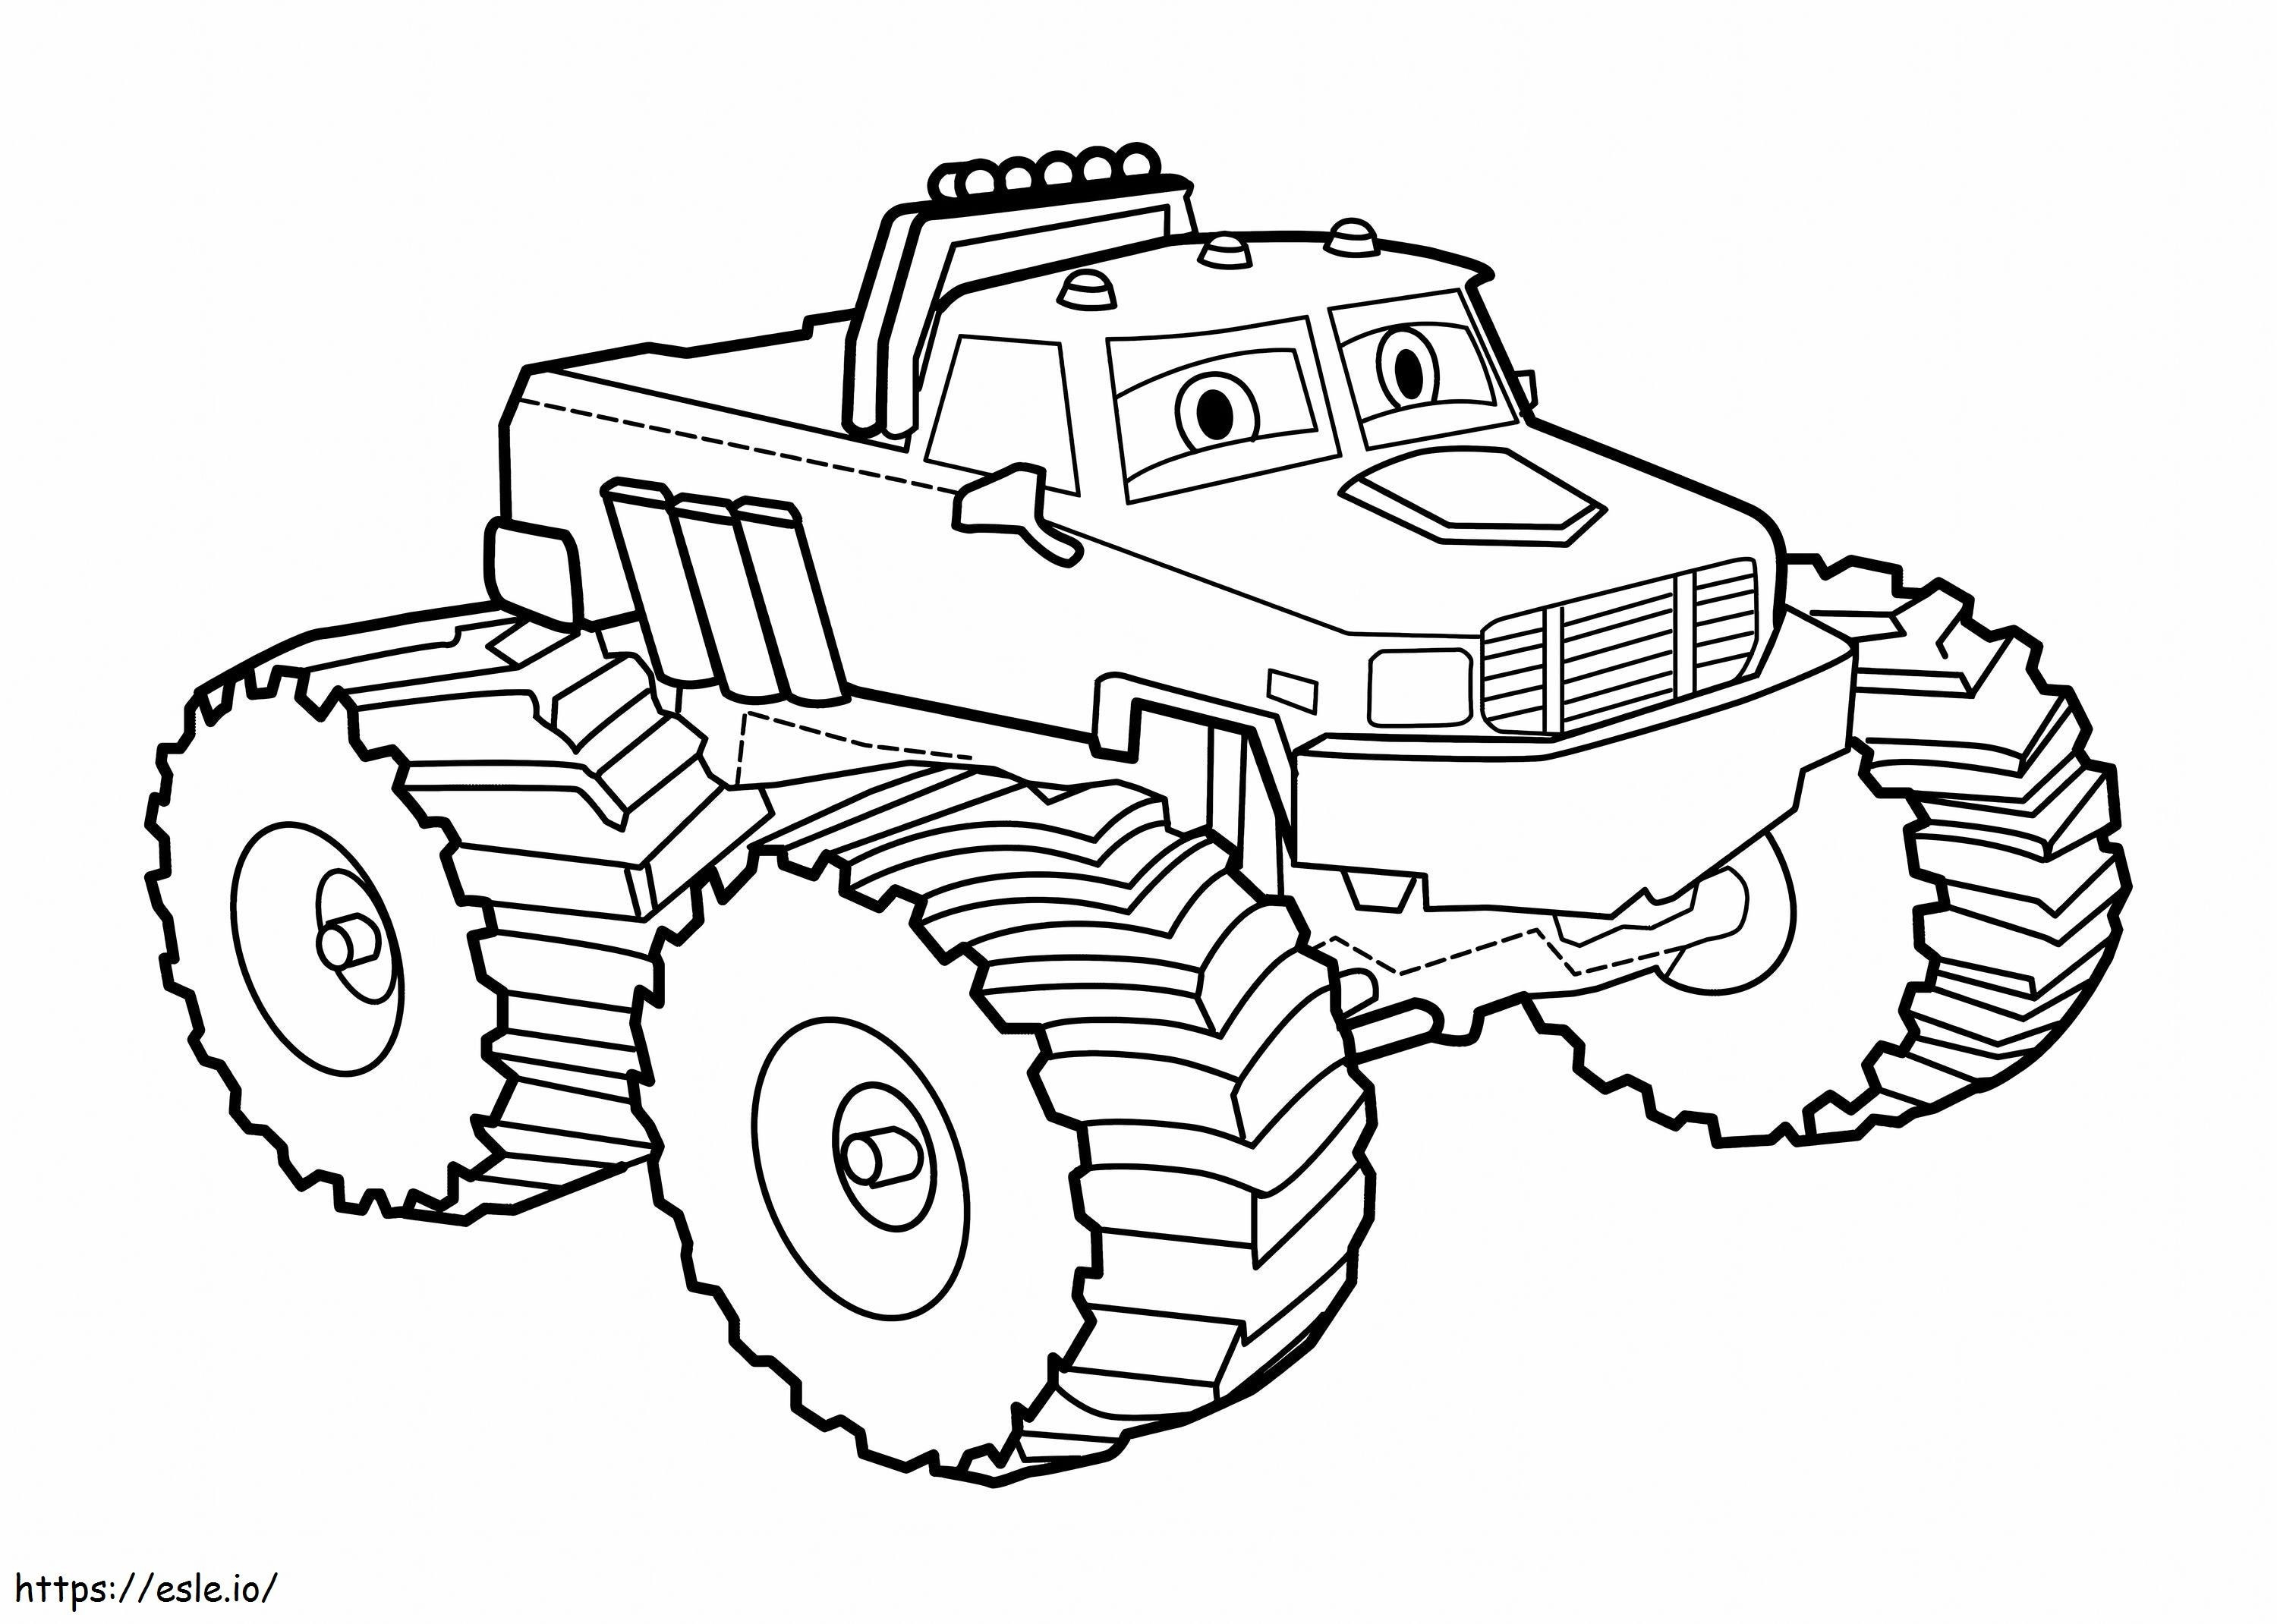  Desene de mașini de colorat New Tow Mater Free Cele mai bune desene de desene animate cu mașini Desene de mașini de colorat de colorat